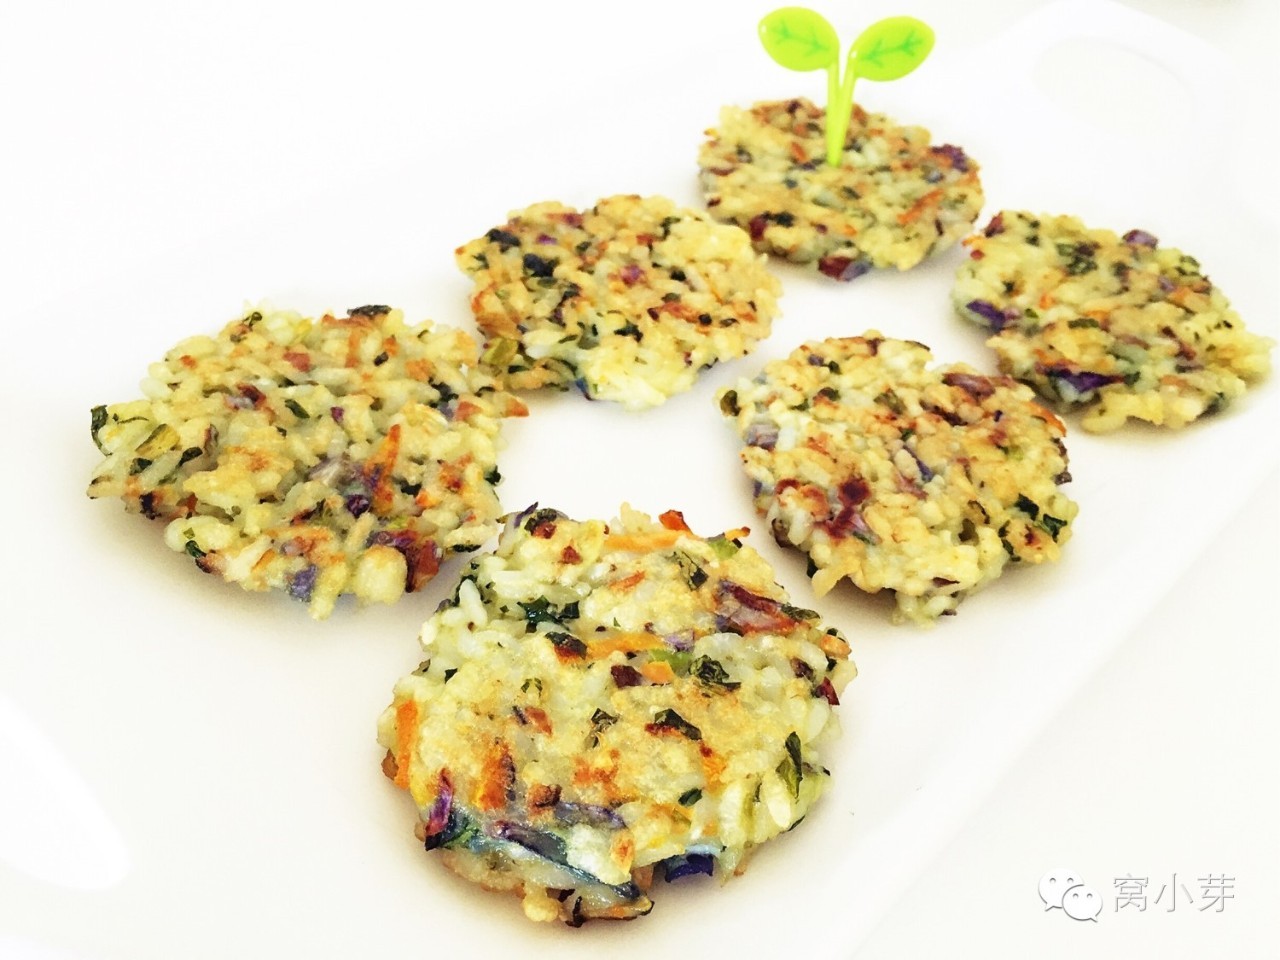 彩蔬小米饼—一站式解决宝宝吃饭和吃蔬菜的问题!12M+